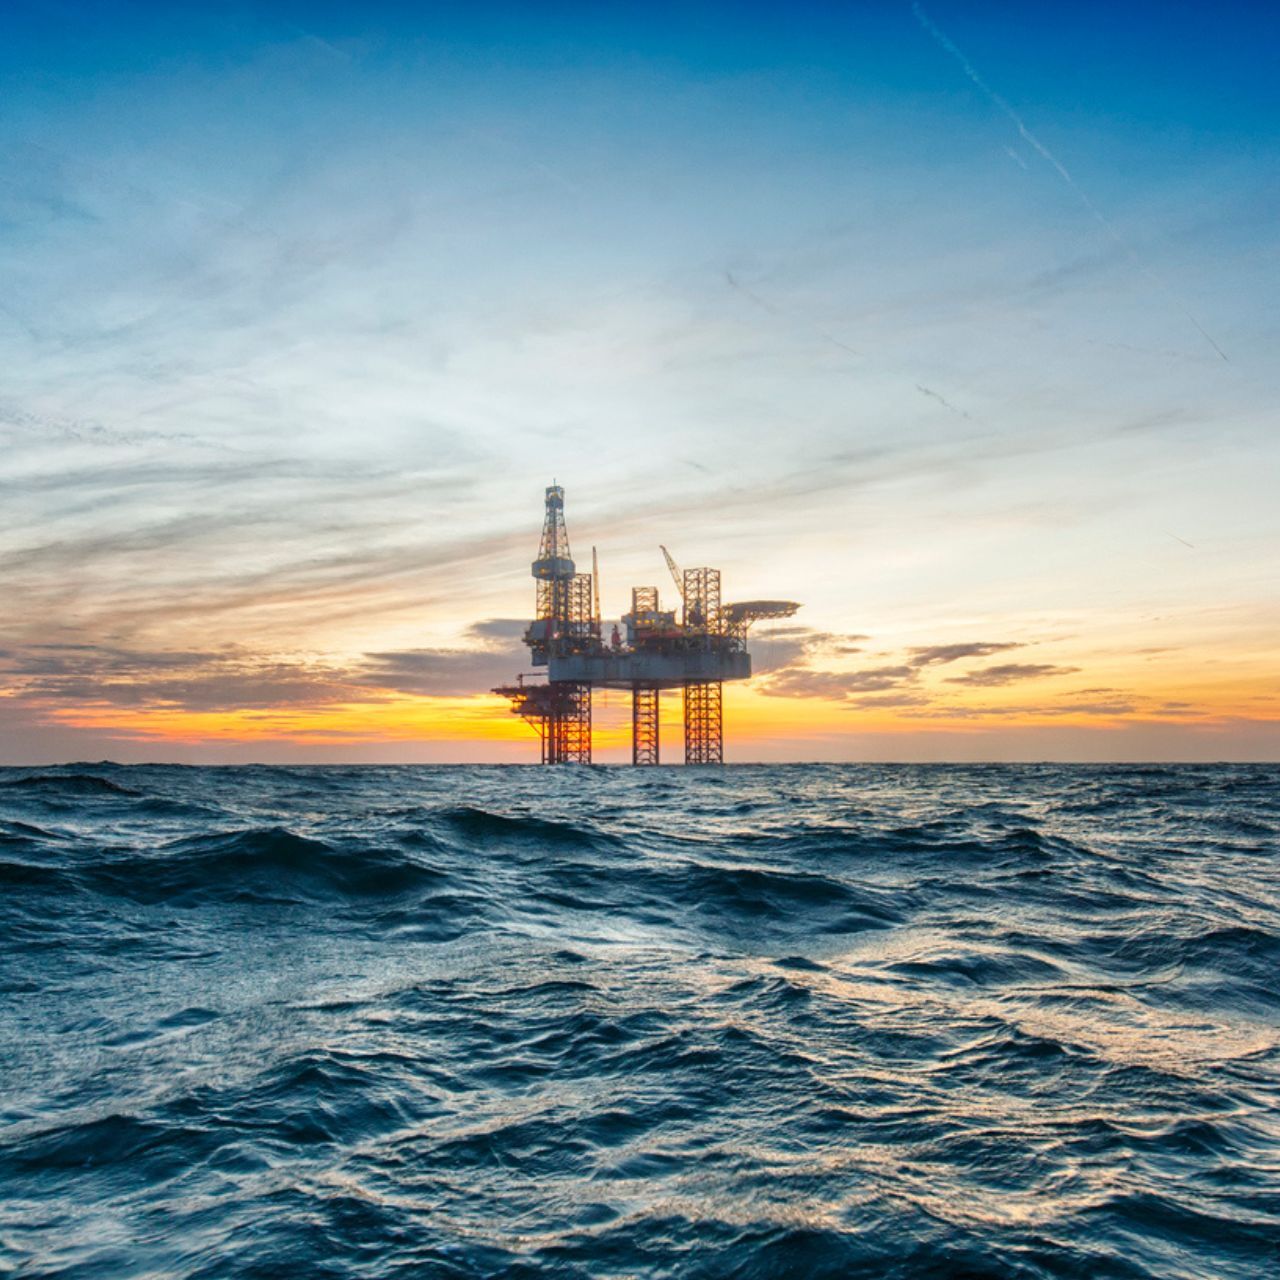 Petrolio: una stazione petrolifera in mezzo al mare